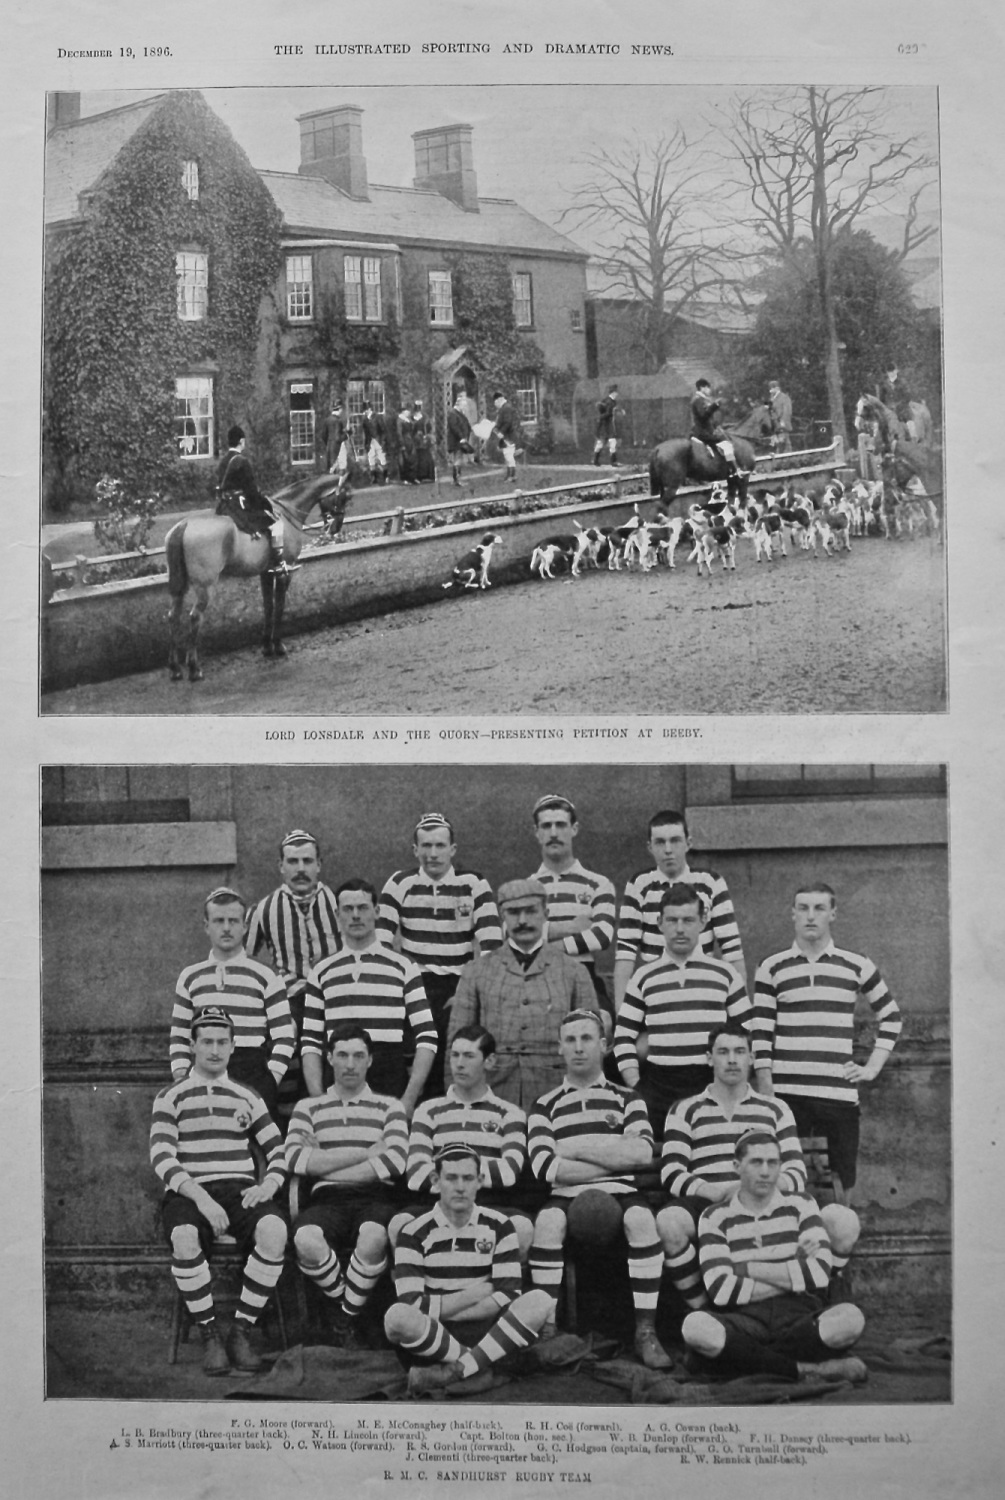 R. M. C. Sandhurst Rugby Team. 1896.